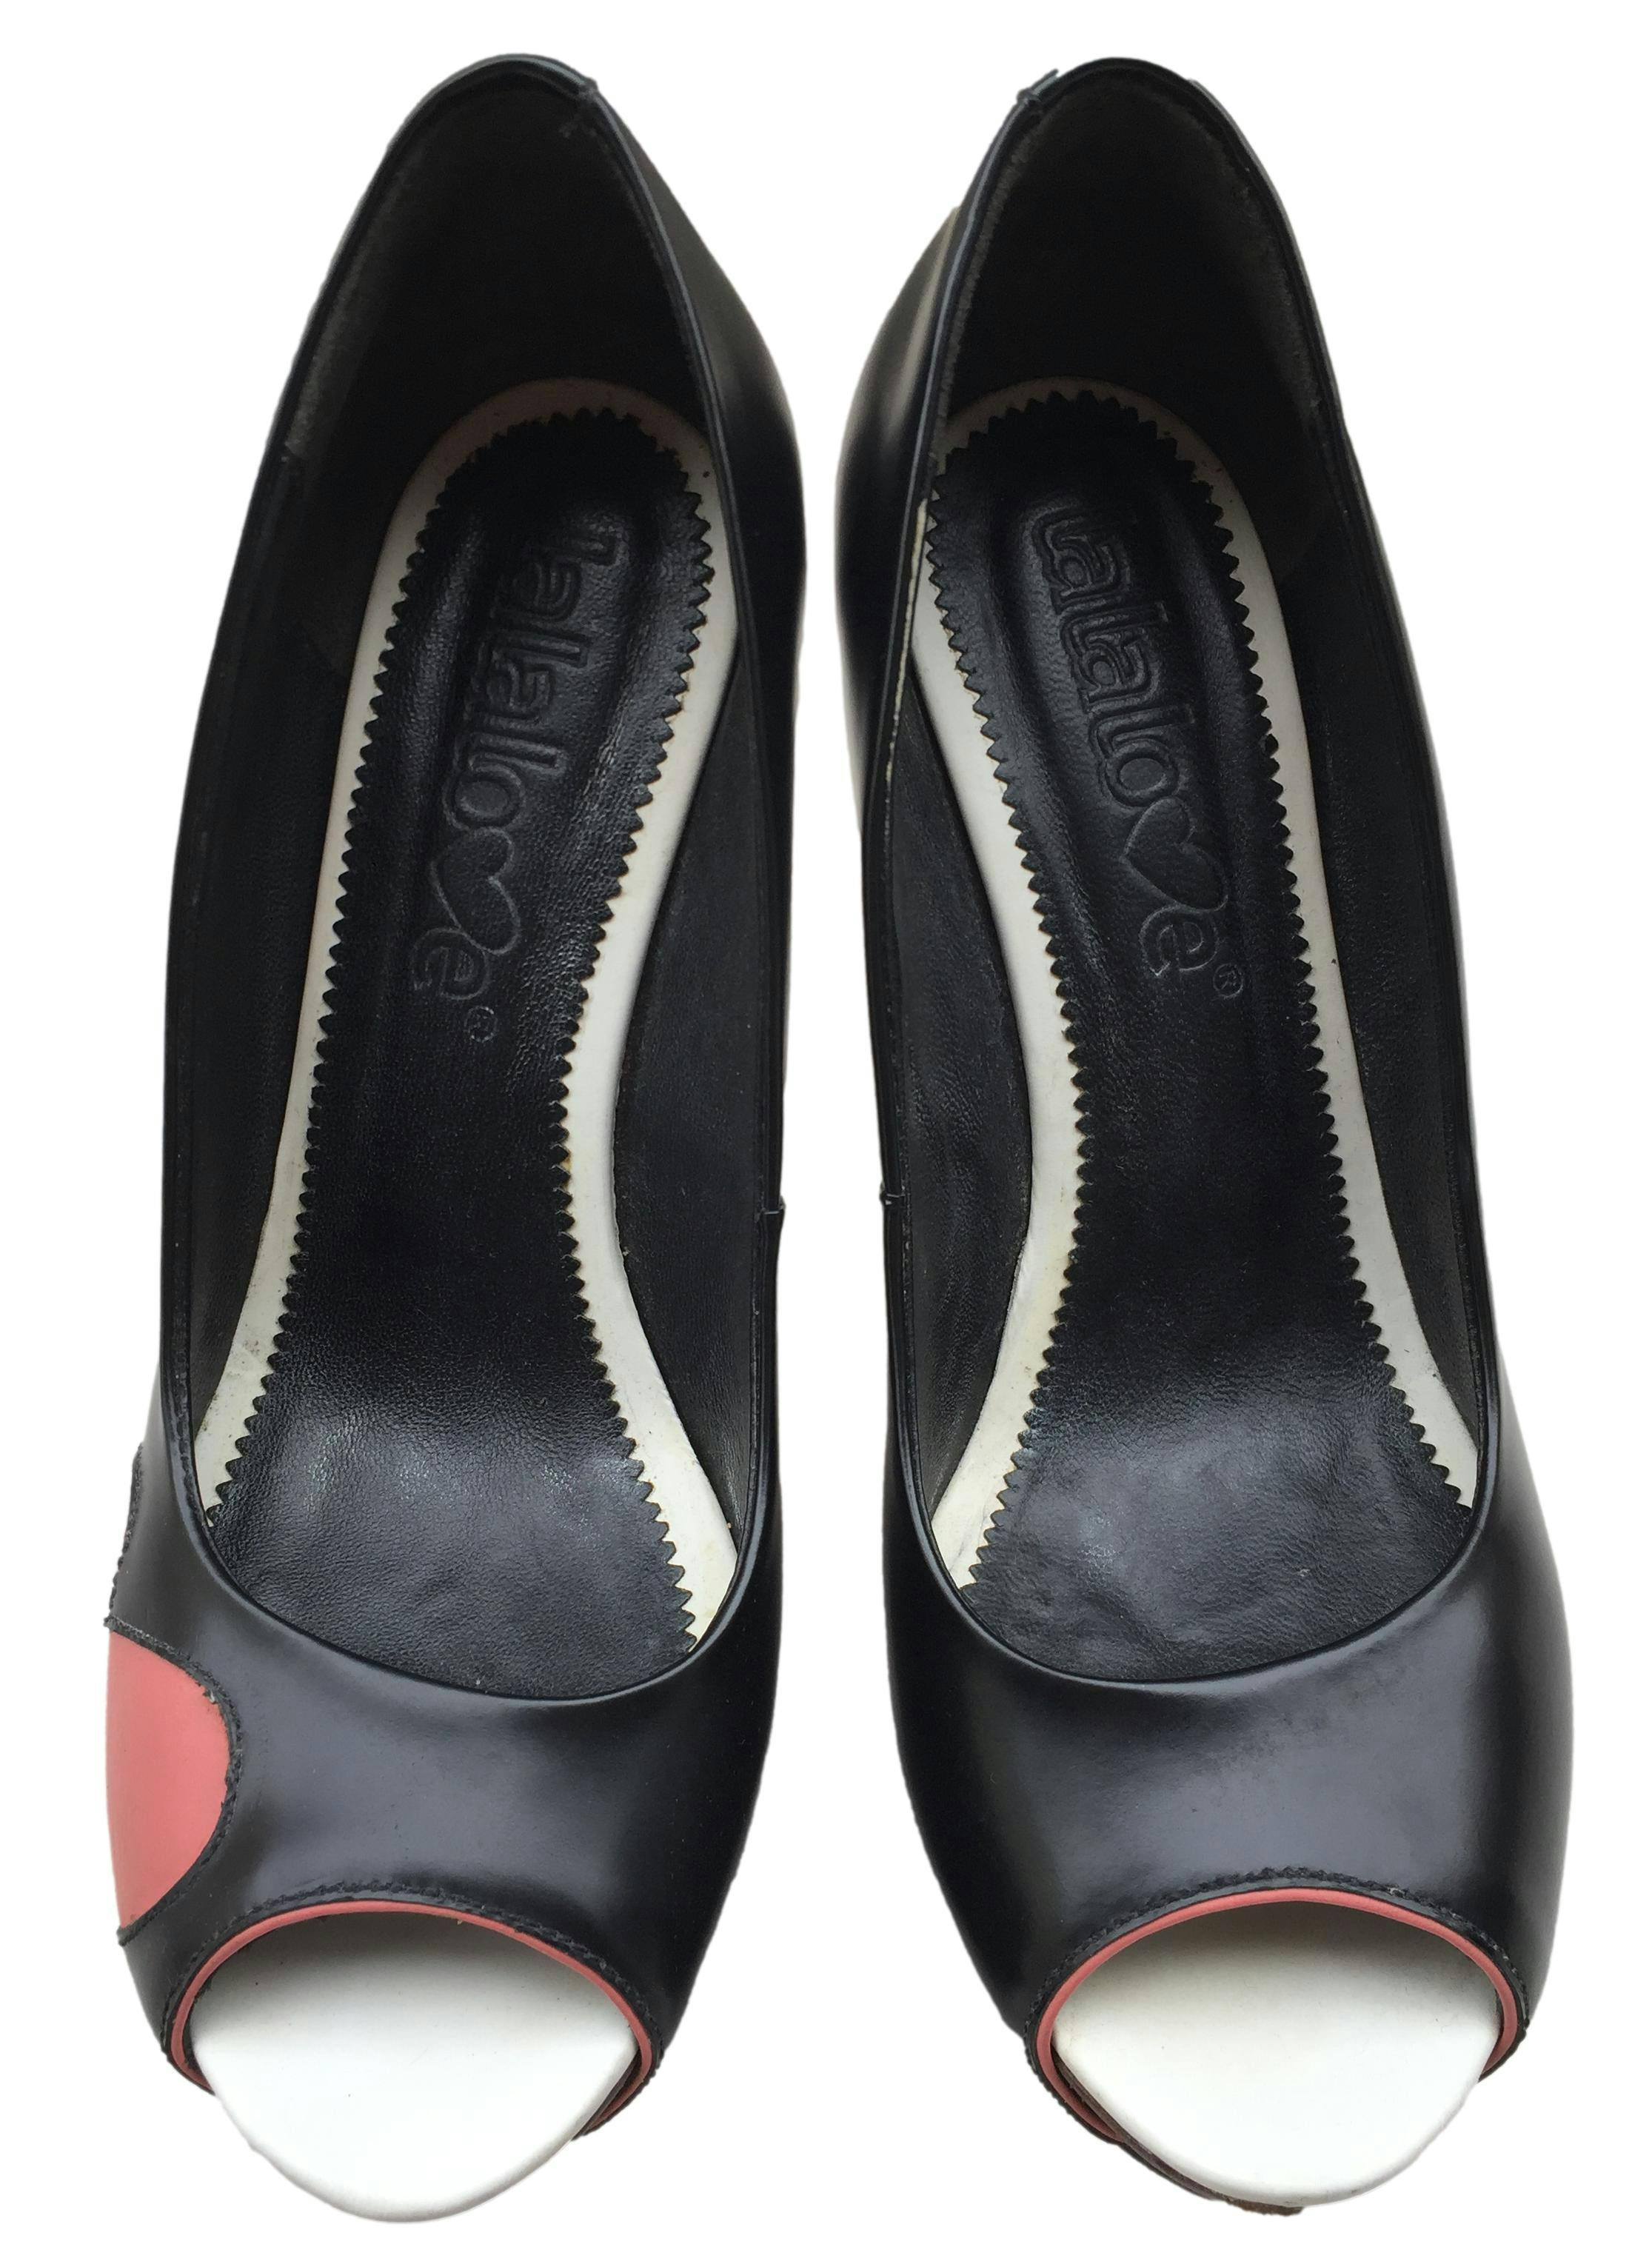 Zapatos Lala Love pee toe, de cuero negro con detalles corazón, taco 12cm plataforma 3cm. Estado 8.5/10